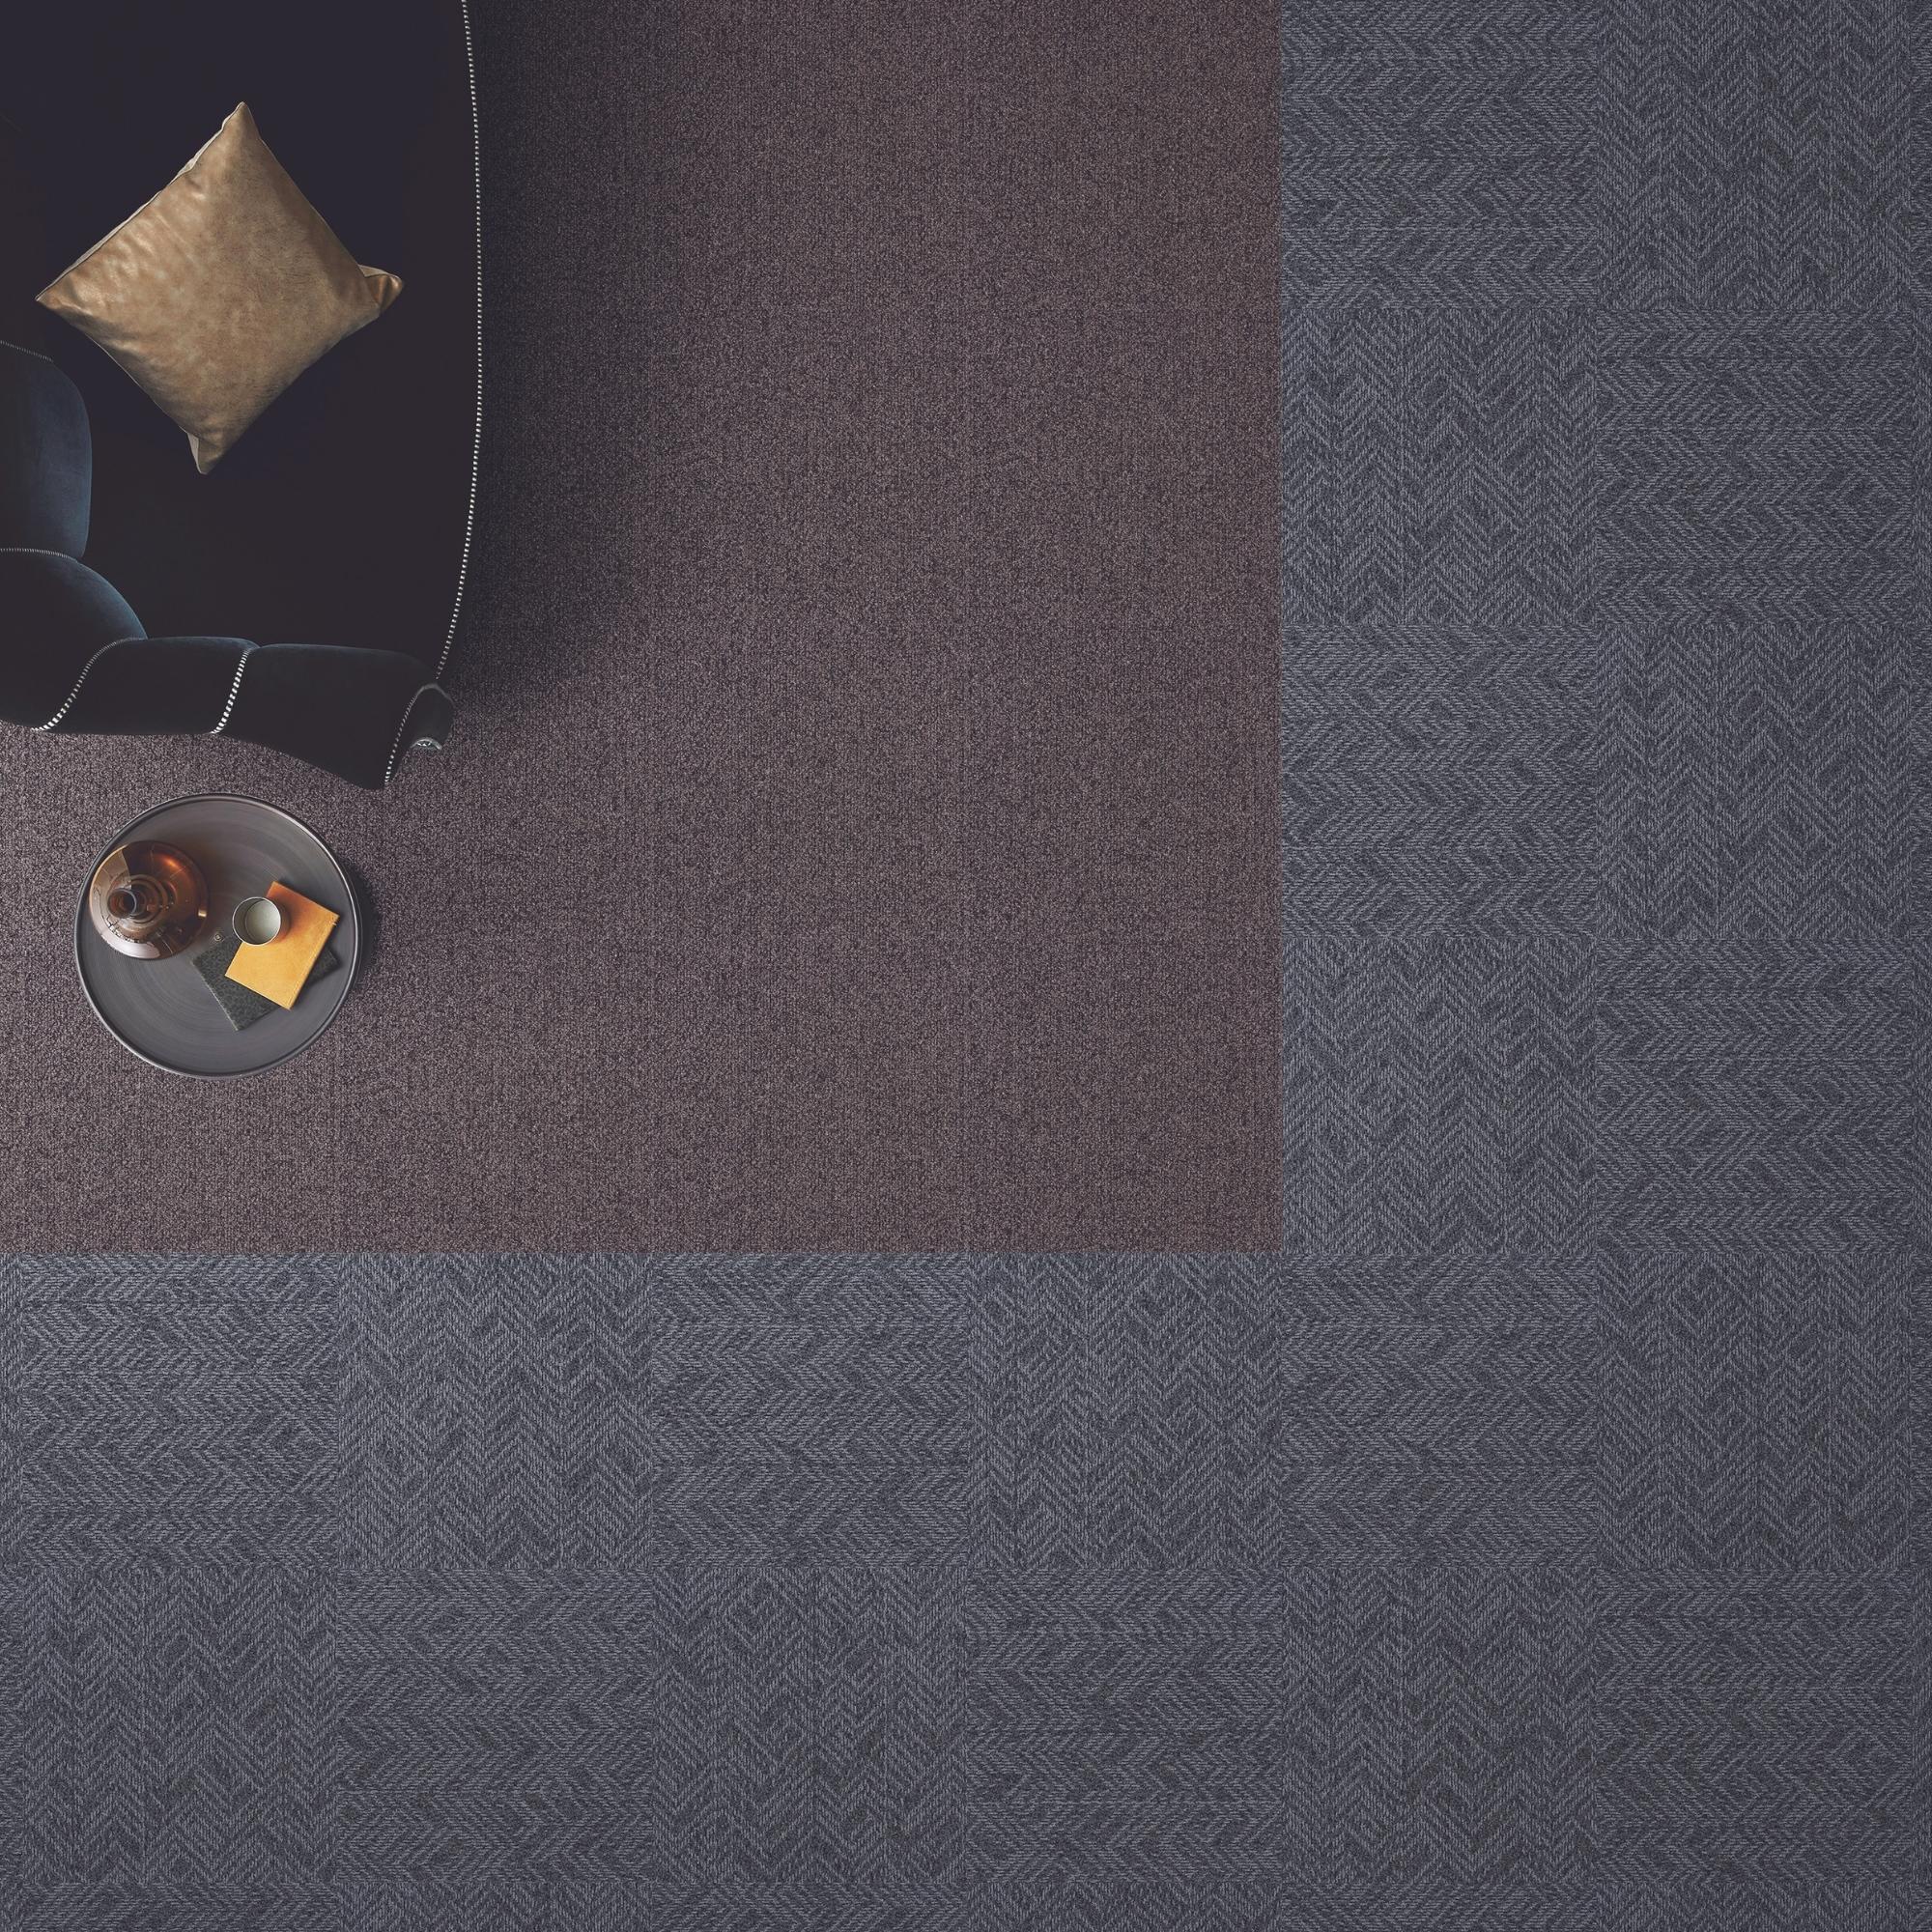 kachi-Carpet-Tile-Flooring-Grey-Brown-3